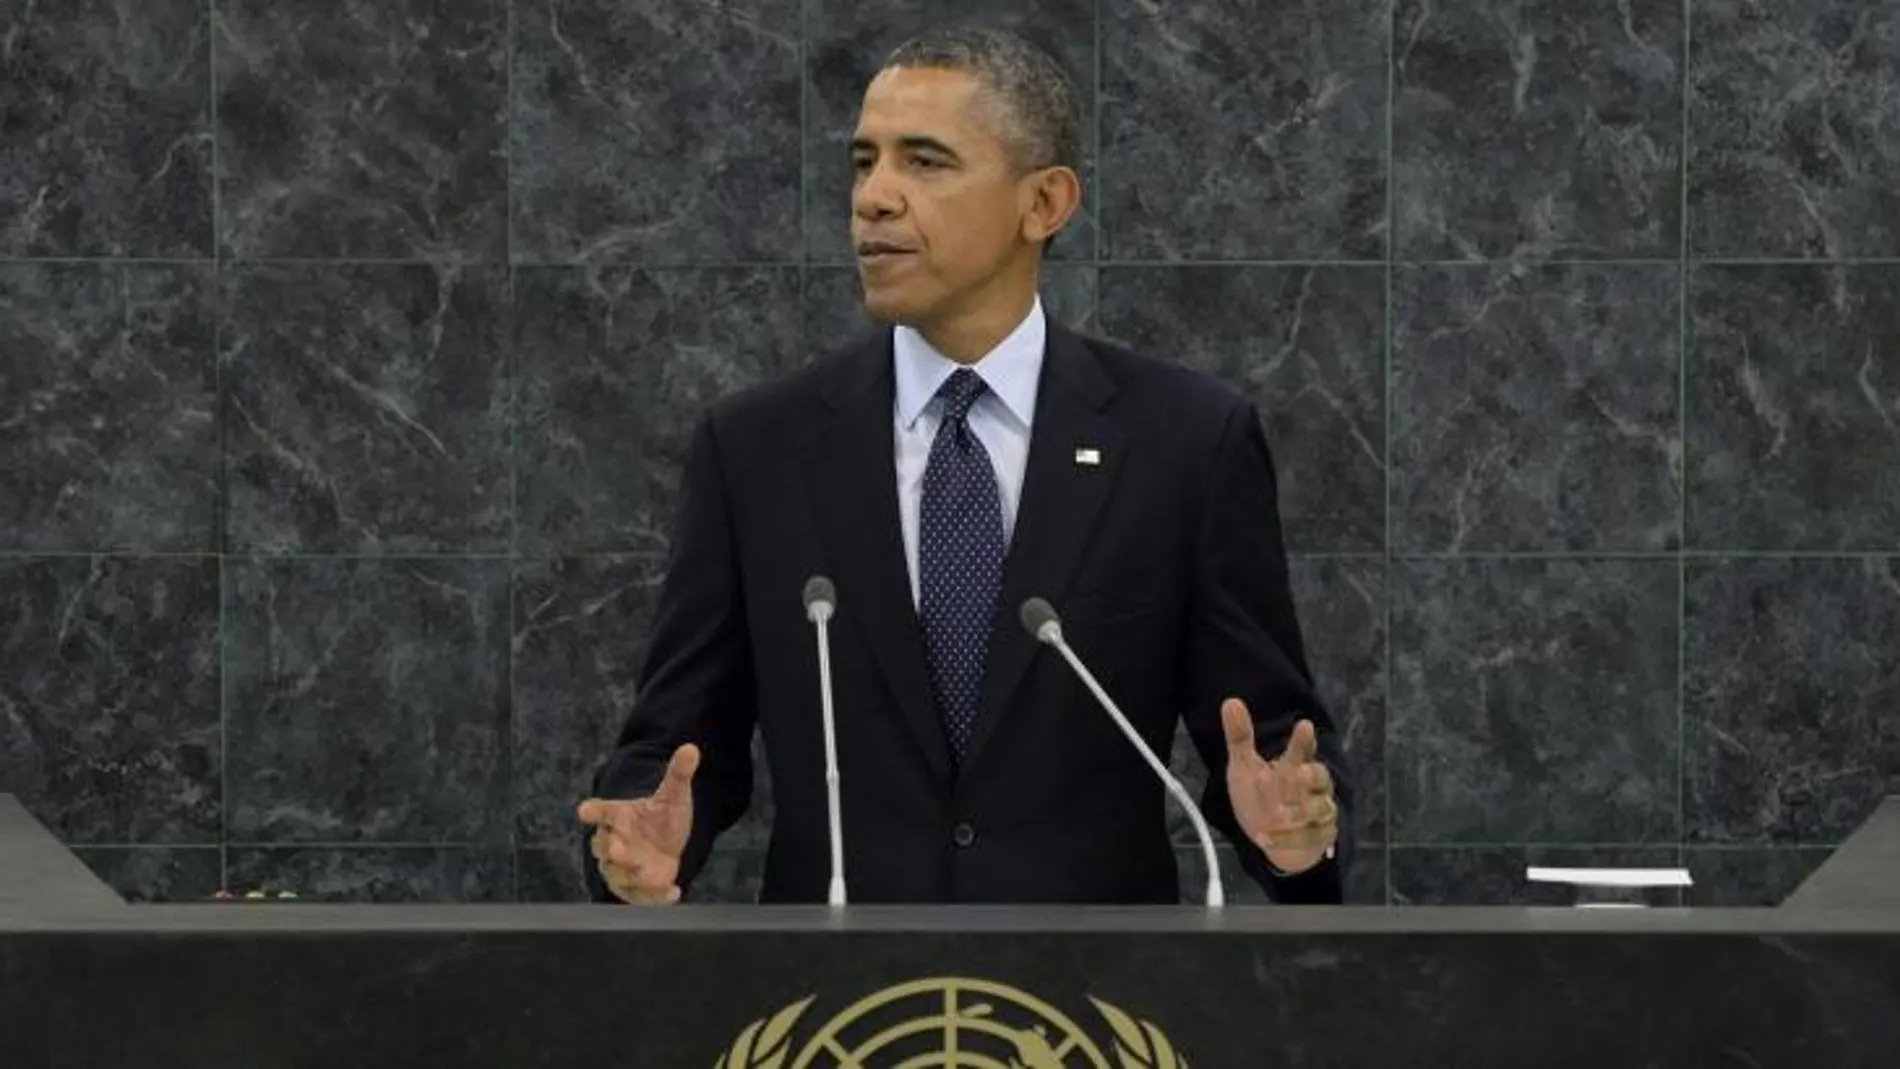 El presidente de Estados Unidos, Barack Obama, pronuncia un discurso durante su intervención en el debate general de la 68ª sesión de la Asamblea General de Naciones Unidas hoy, martes 24 de septiembre de 2013 en su sede en Nueva York (Estados Unidos).